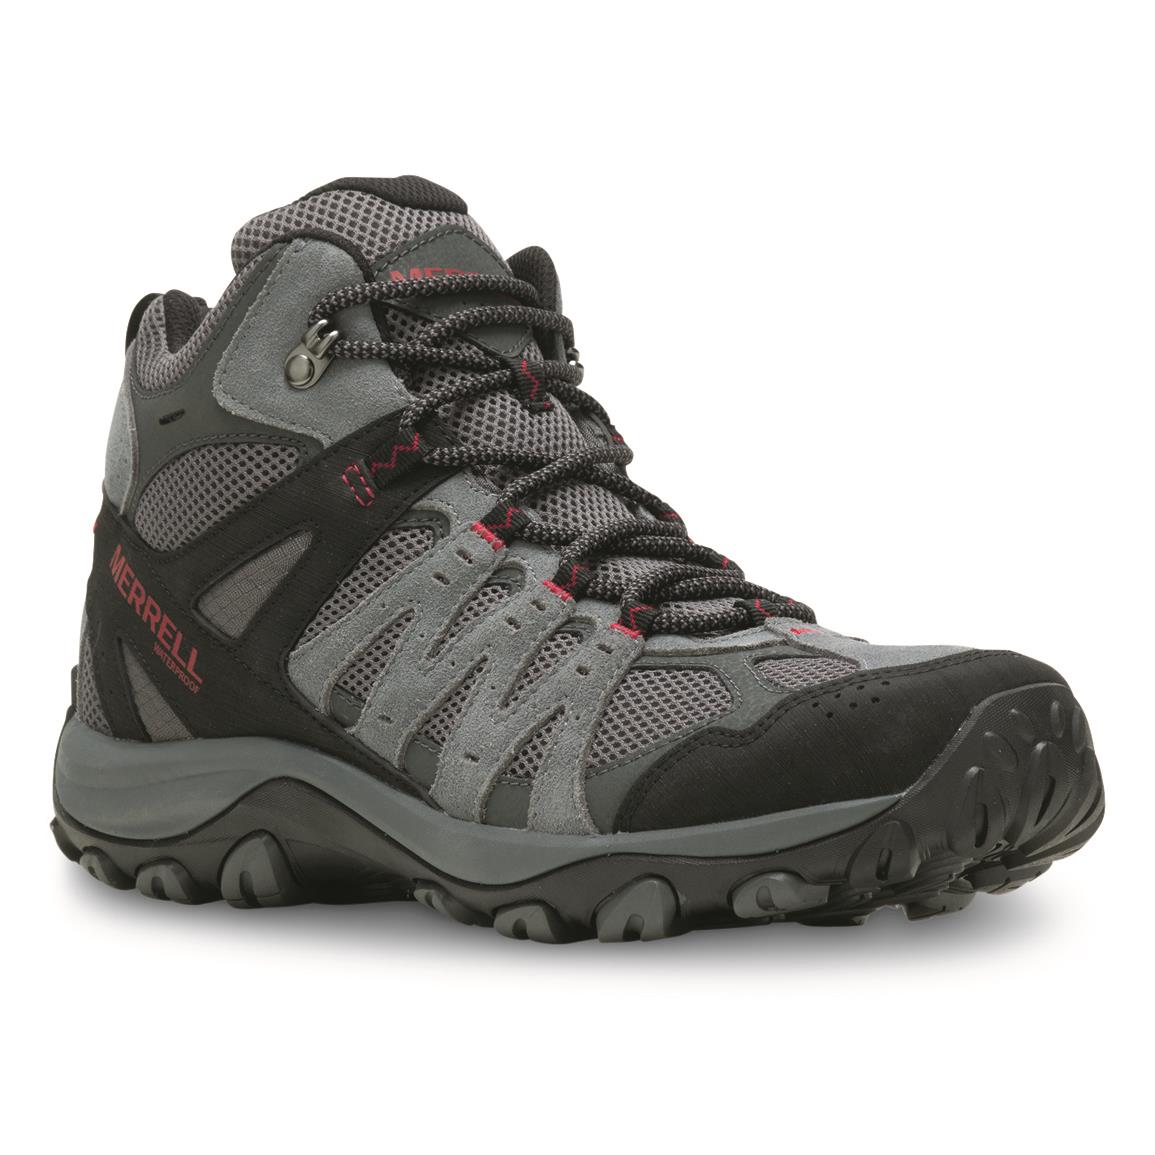 Merrell Men's Accentor 3 Waterproof Hiking Boots, Rock